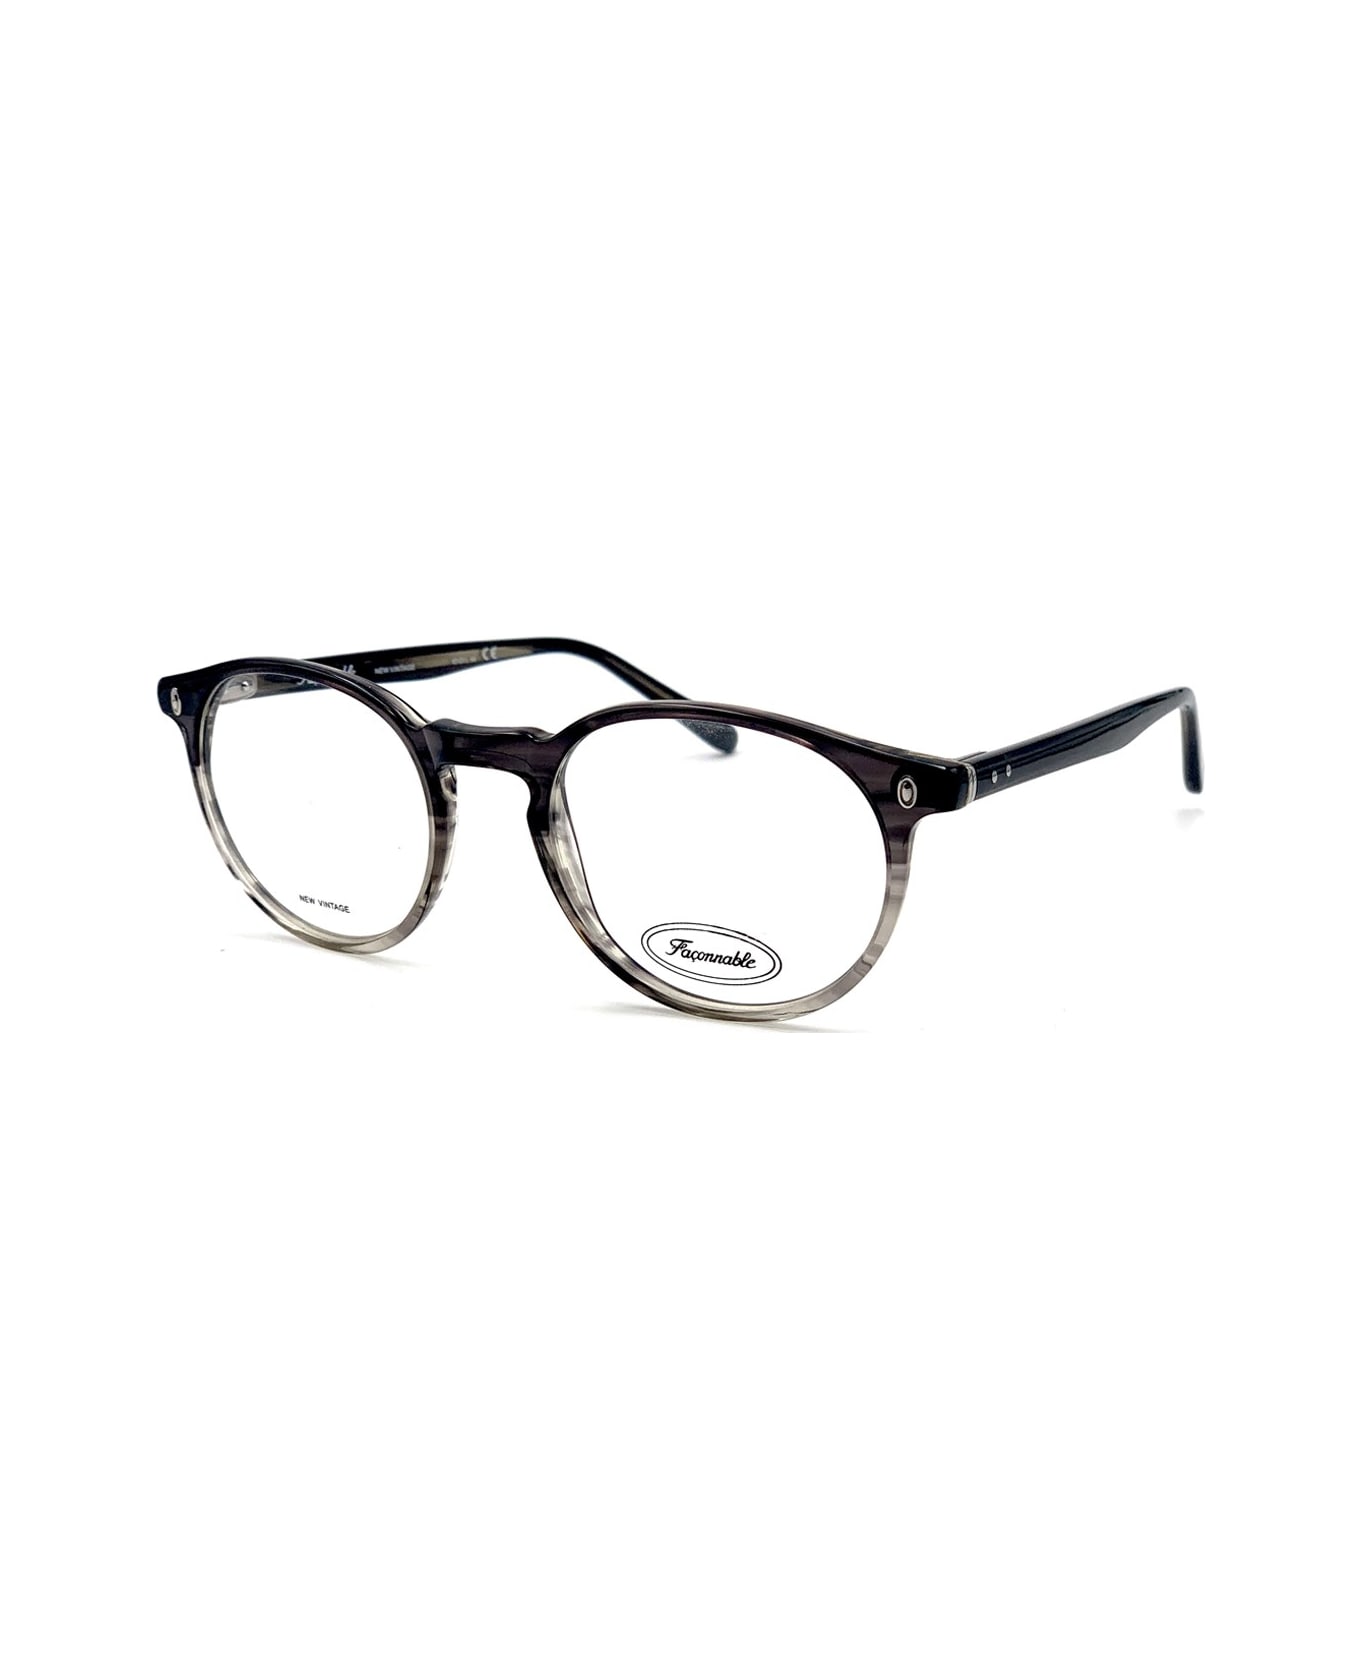 Faconnable Nv246 E290 49-19-145 Glasses - Grigio